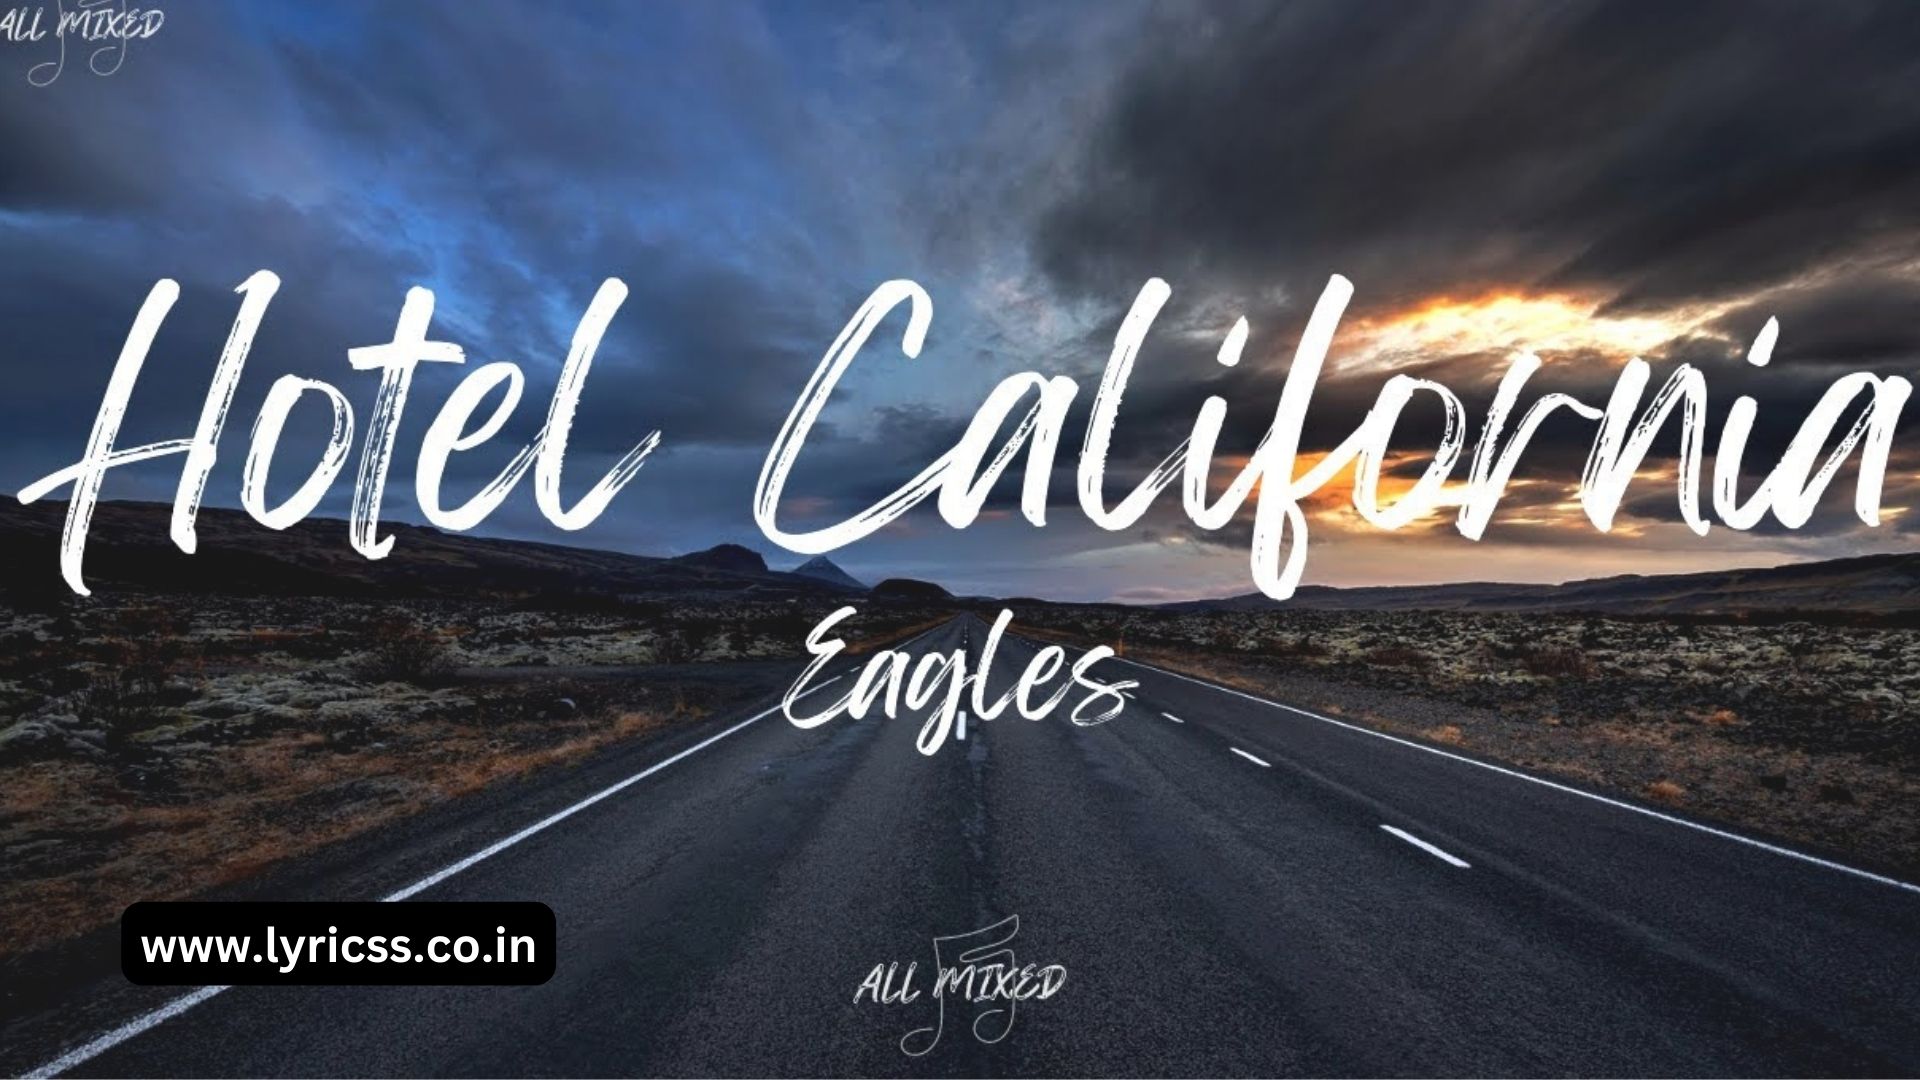 EAGLES HOTEL CALIFORNIA LYRICS | Eagles - Hotel California